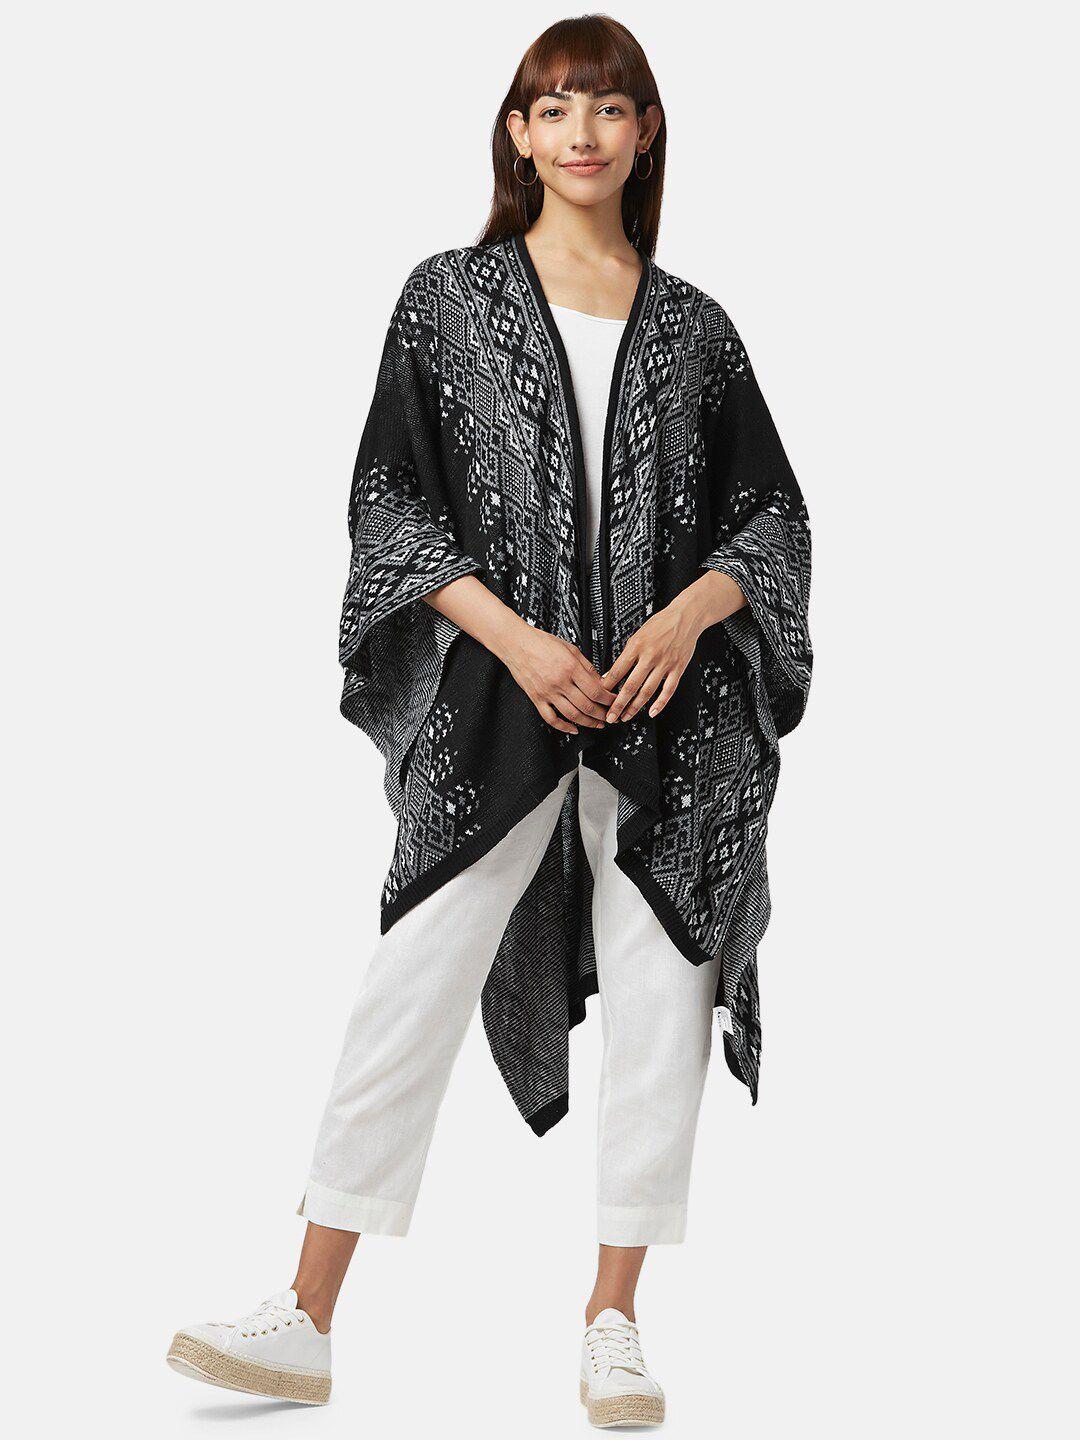 akkriti by pantaloons women black & white longline shrug